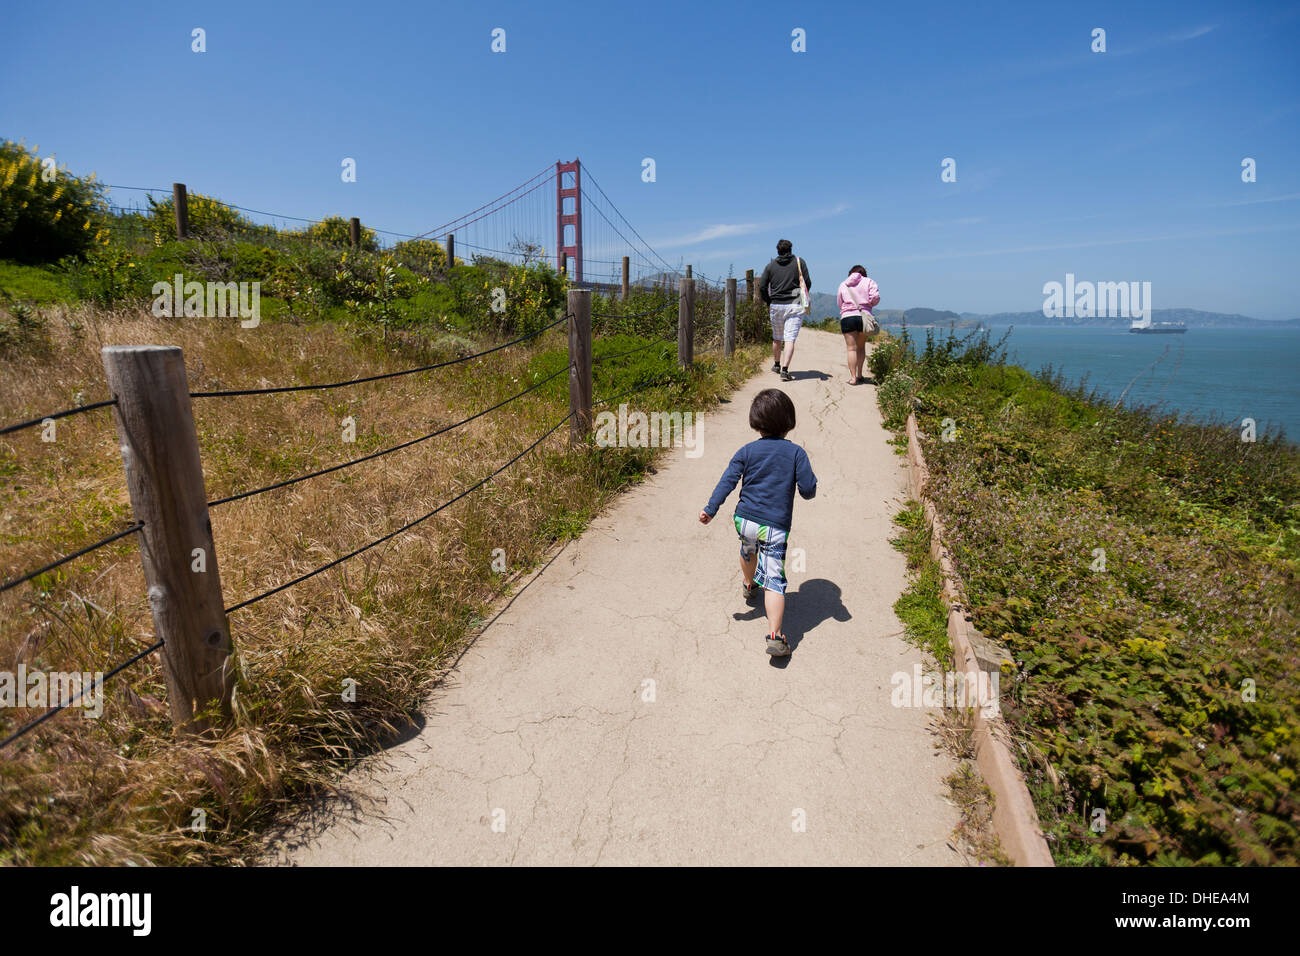 Kind läuft nach Eltern auf Fußweg - San Francisco, Kalifornien, USA Stockfoto